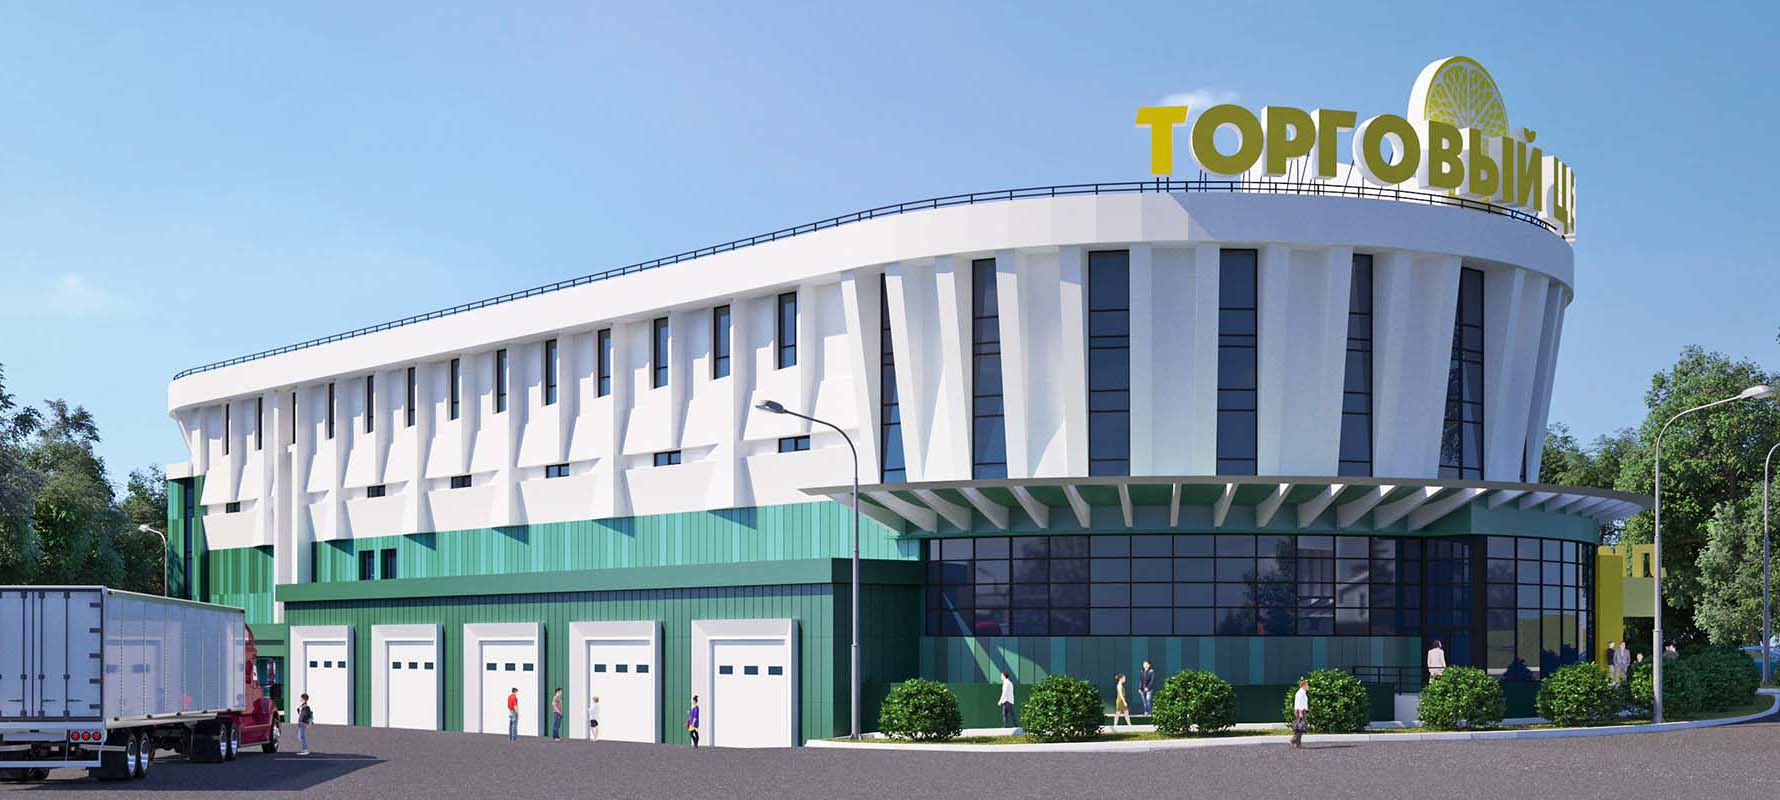 Новый торговый центр будет открыт в Ростове до конца 2018 года - фото 1